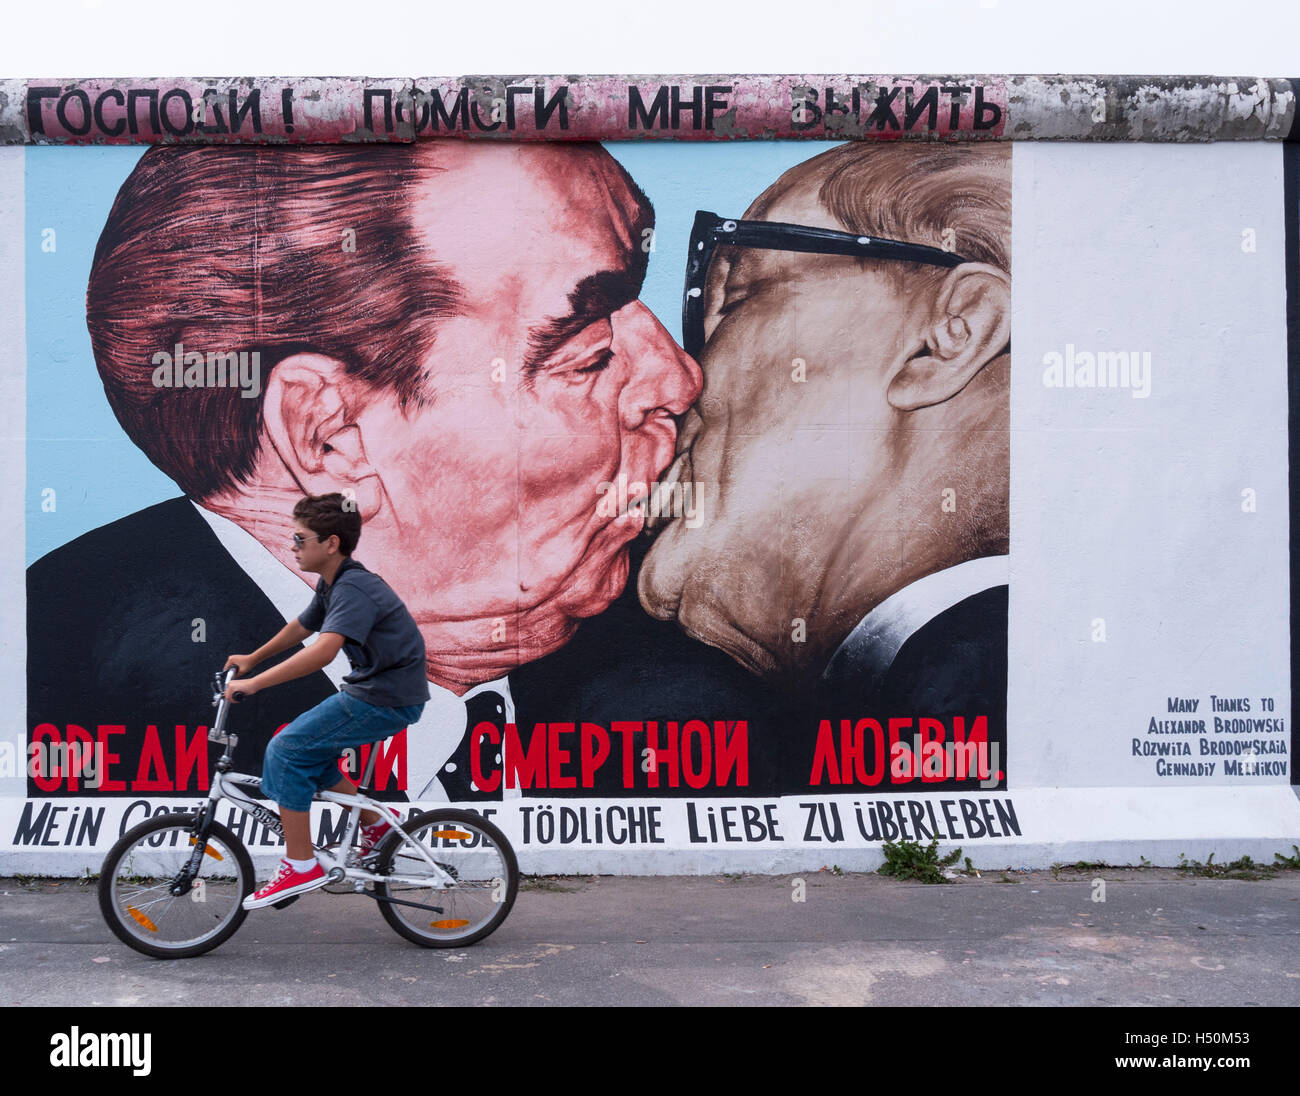 Cicli di ragazzo passato murale di Brezhnev kissing Honecker a East Side Gallery a muro di Berlino in / Friedrichshain Kreuzberg di Berlino Foto Stock